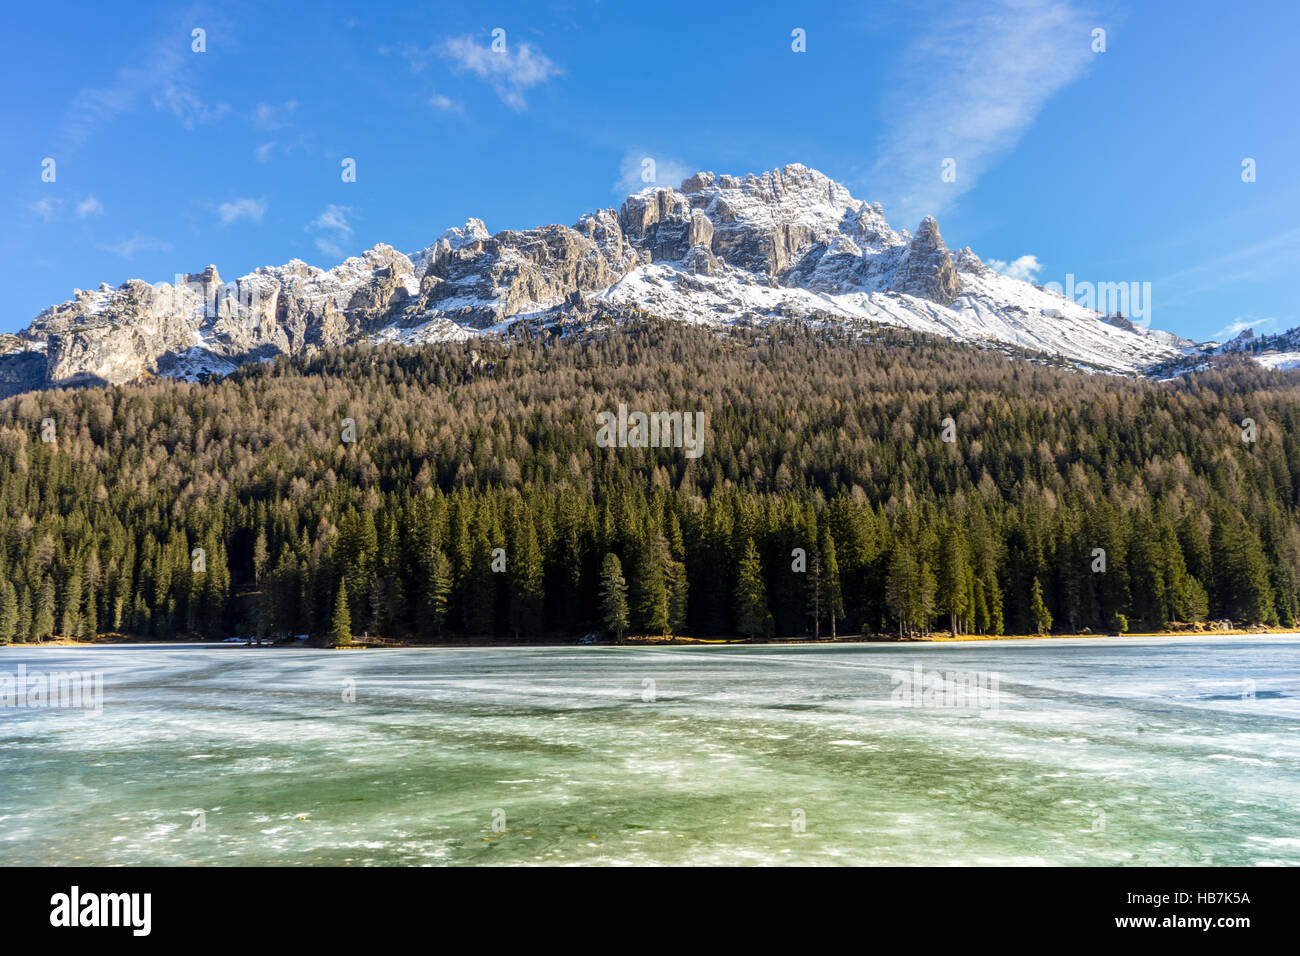 Le lac de Misurina ou Lago di Misurina Dolomites italiennes et Tre Cime di Lavaredo, Padova, Veneto - Italie Banque D'Images